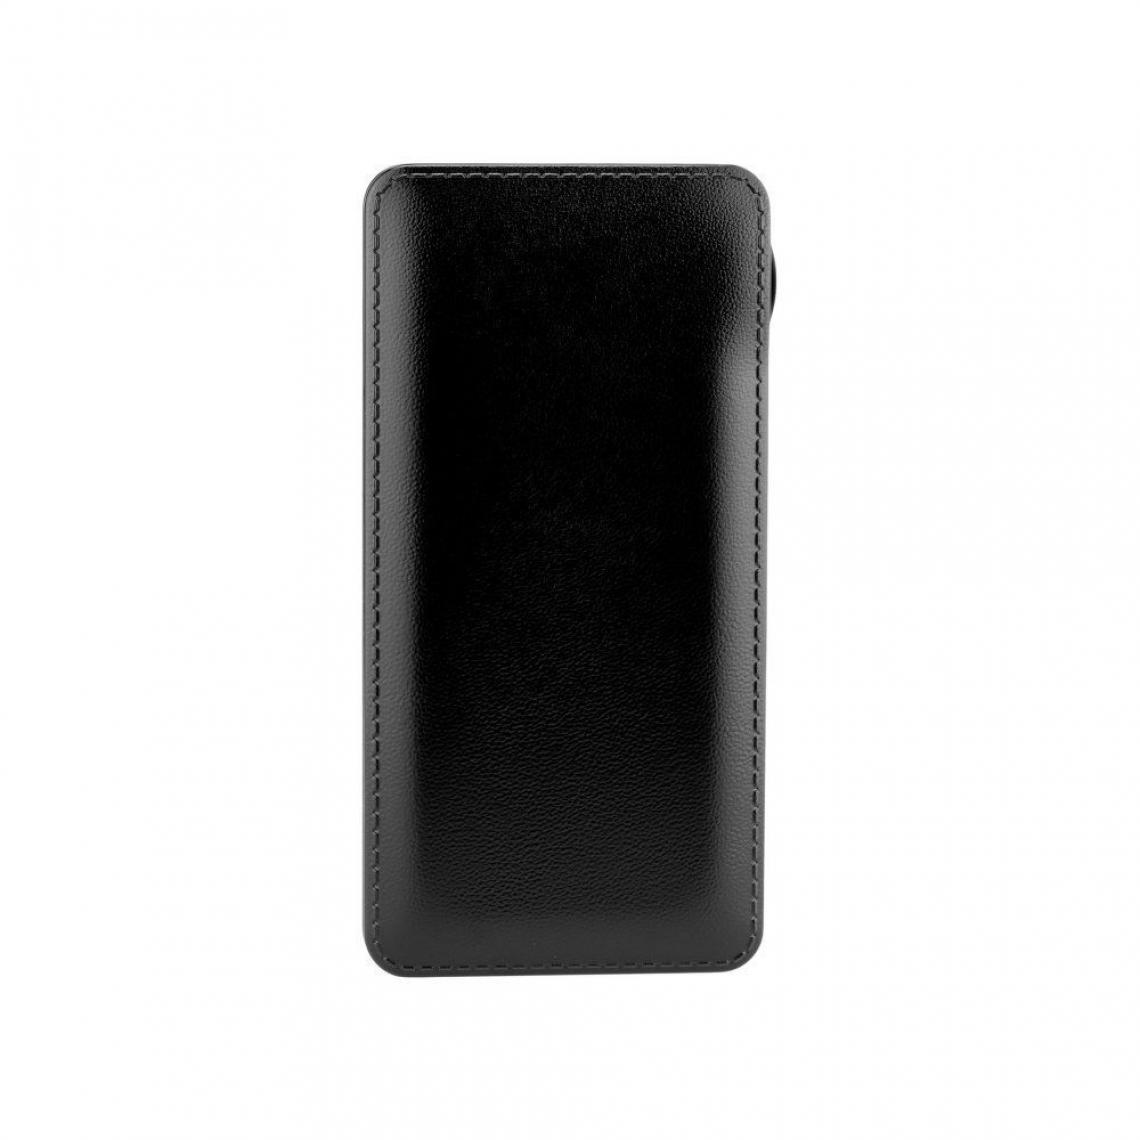 Ozzzo - Chargeur batterie externe 30000 mAh powerbank ozzzo noir pour HTC U12 Life - Autres accessoires smartphone